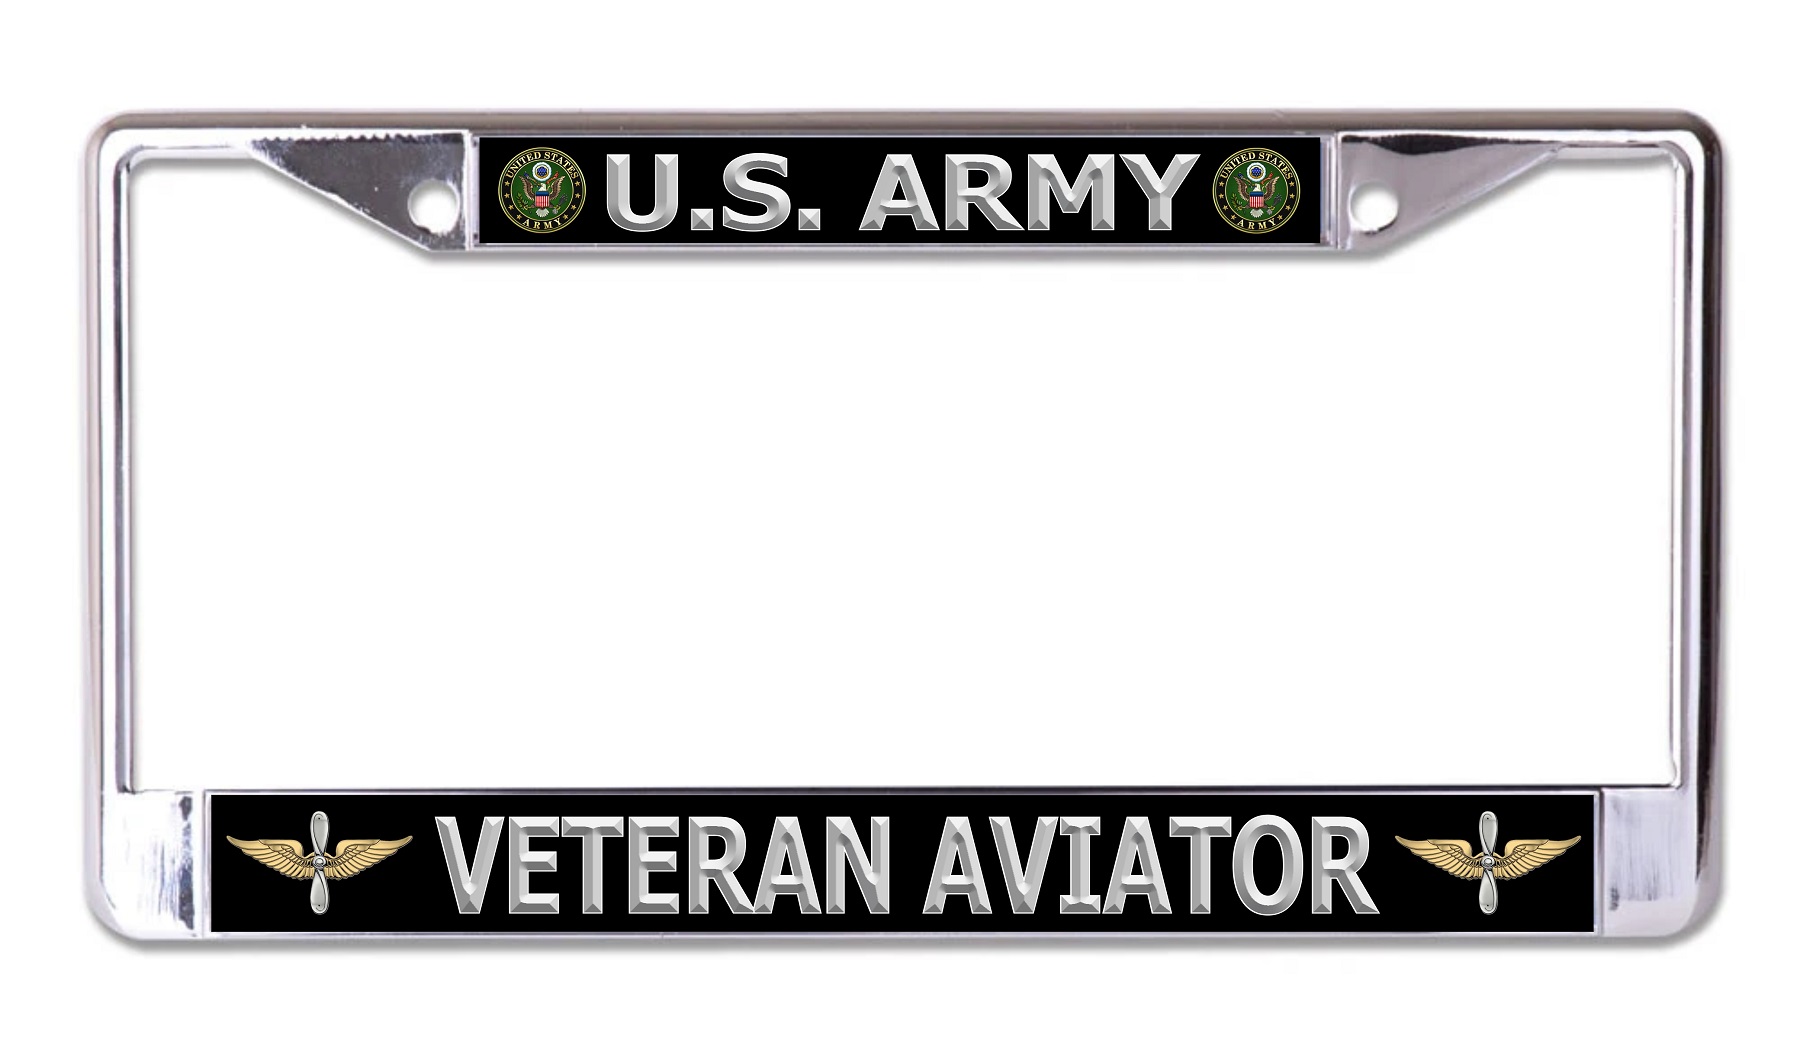 U.S. Army Veteran Aviator Chrome License Plate FRAME